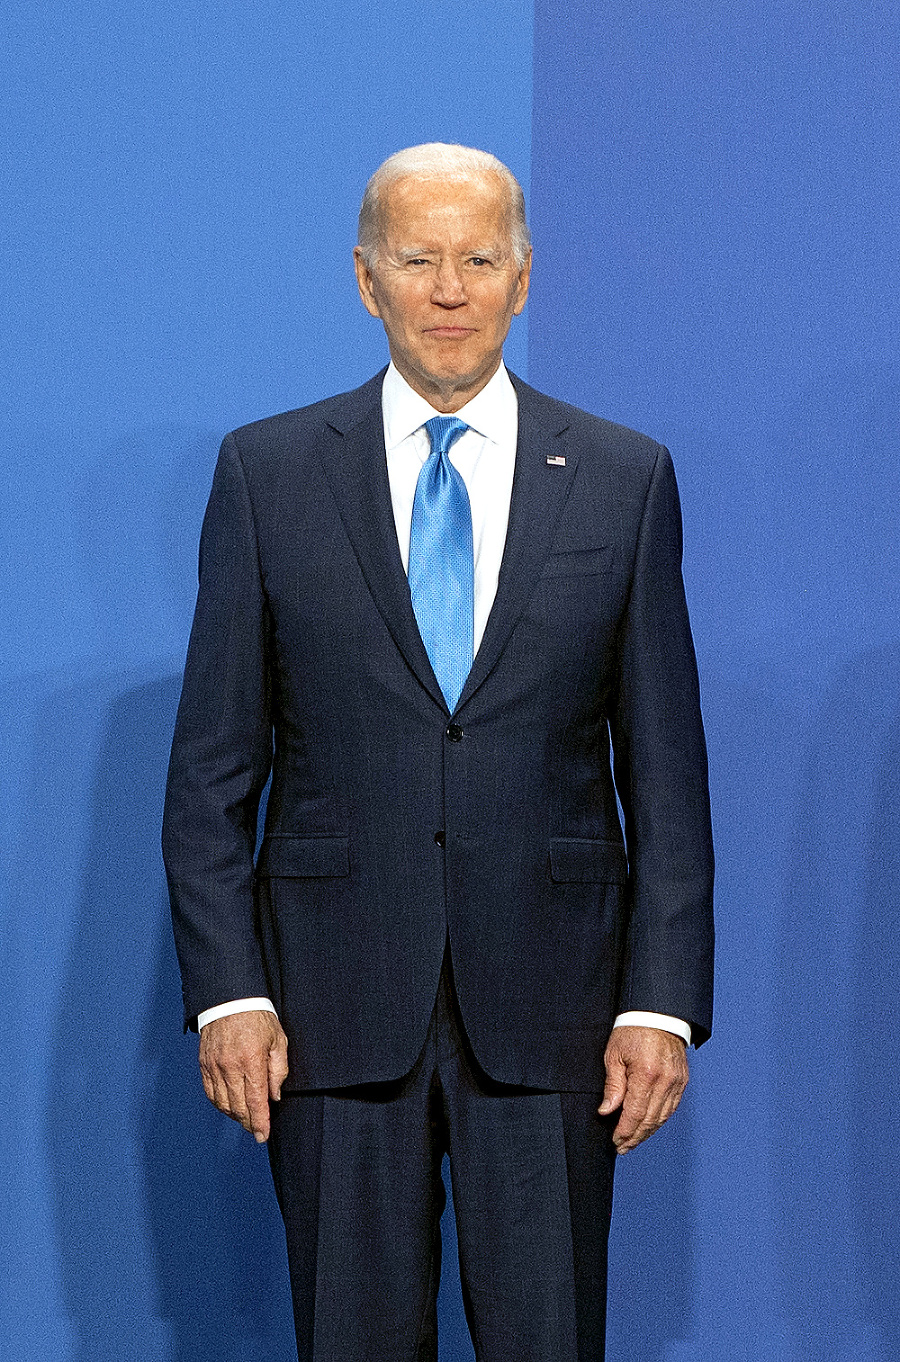 USA - Joe Biden